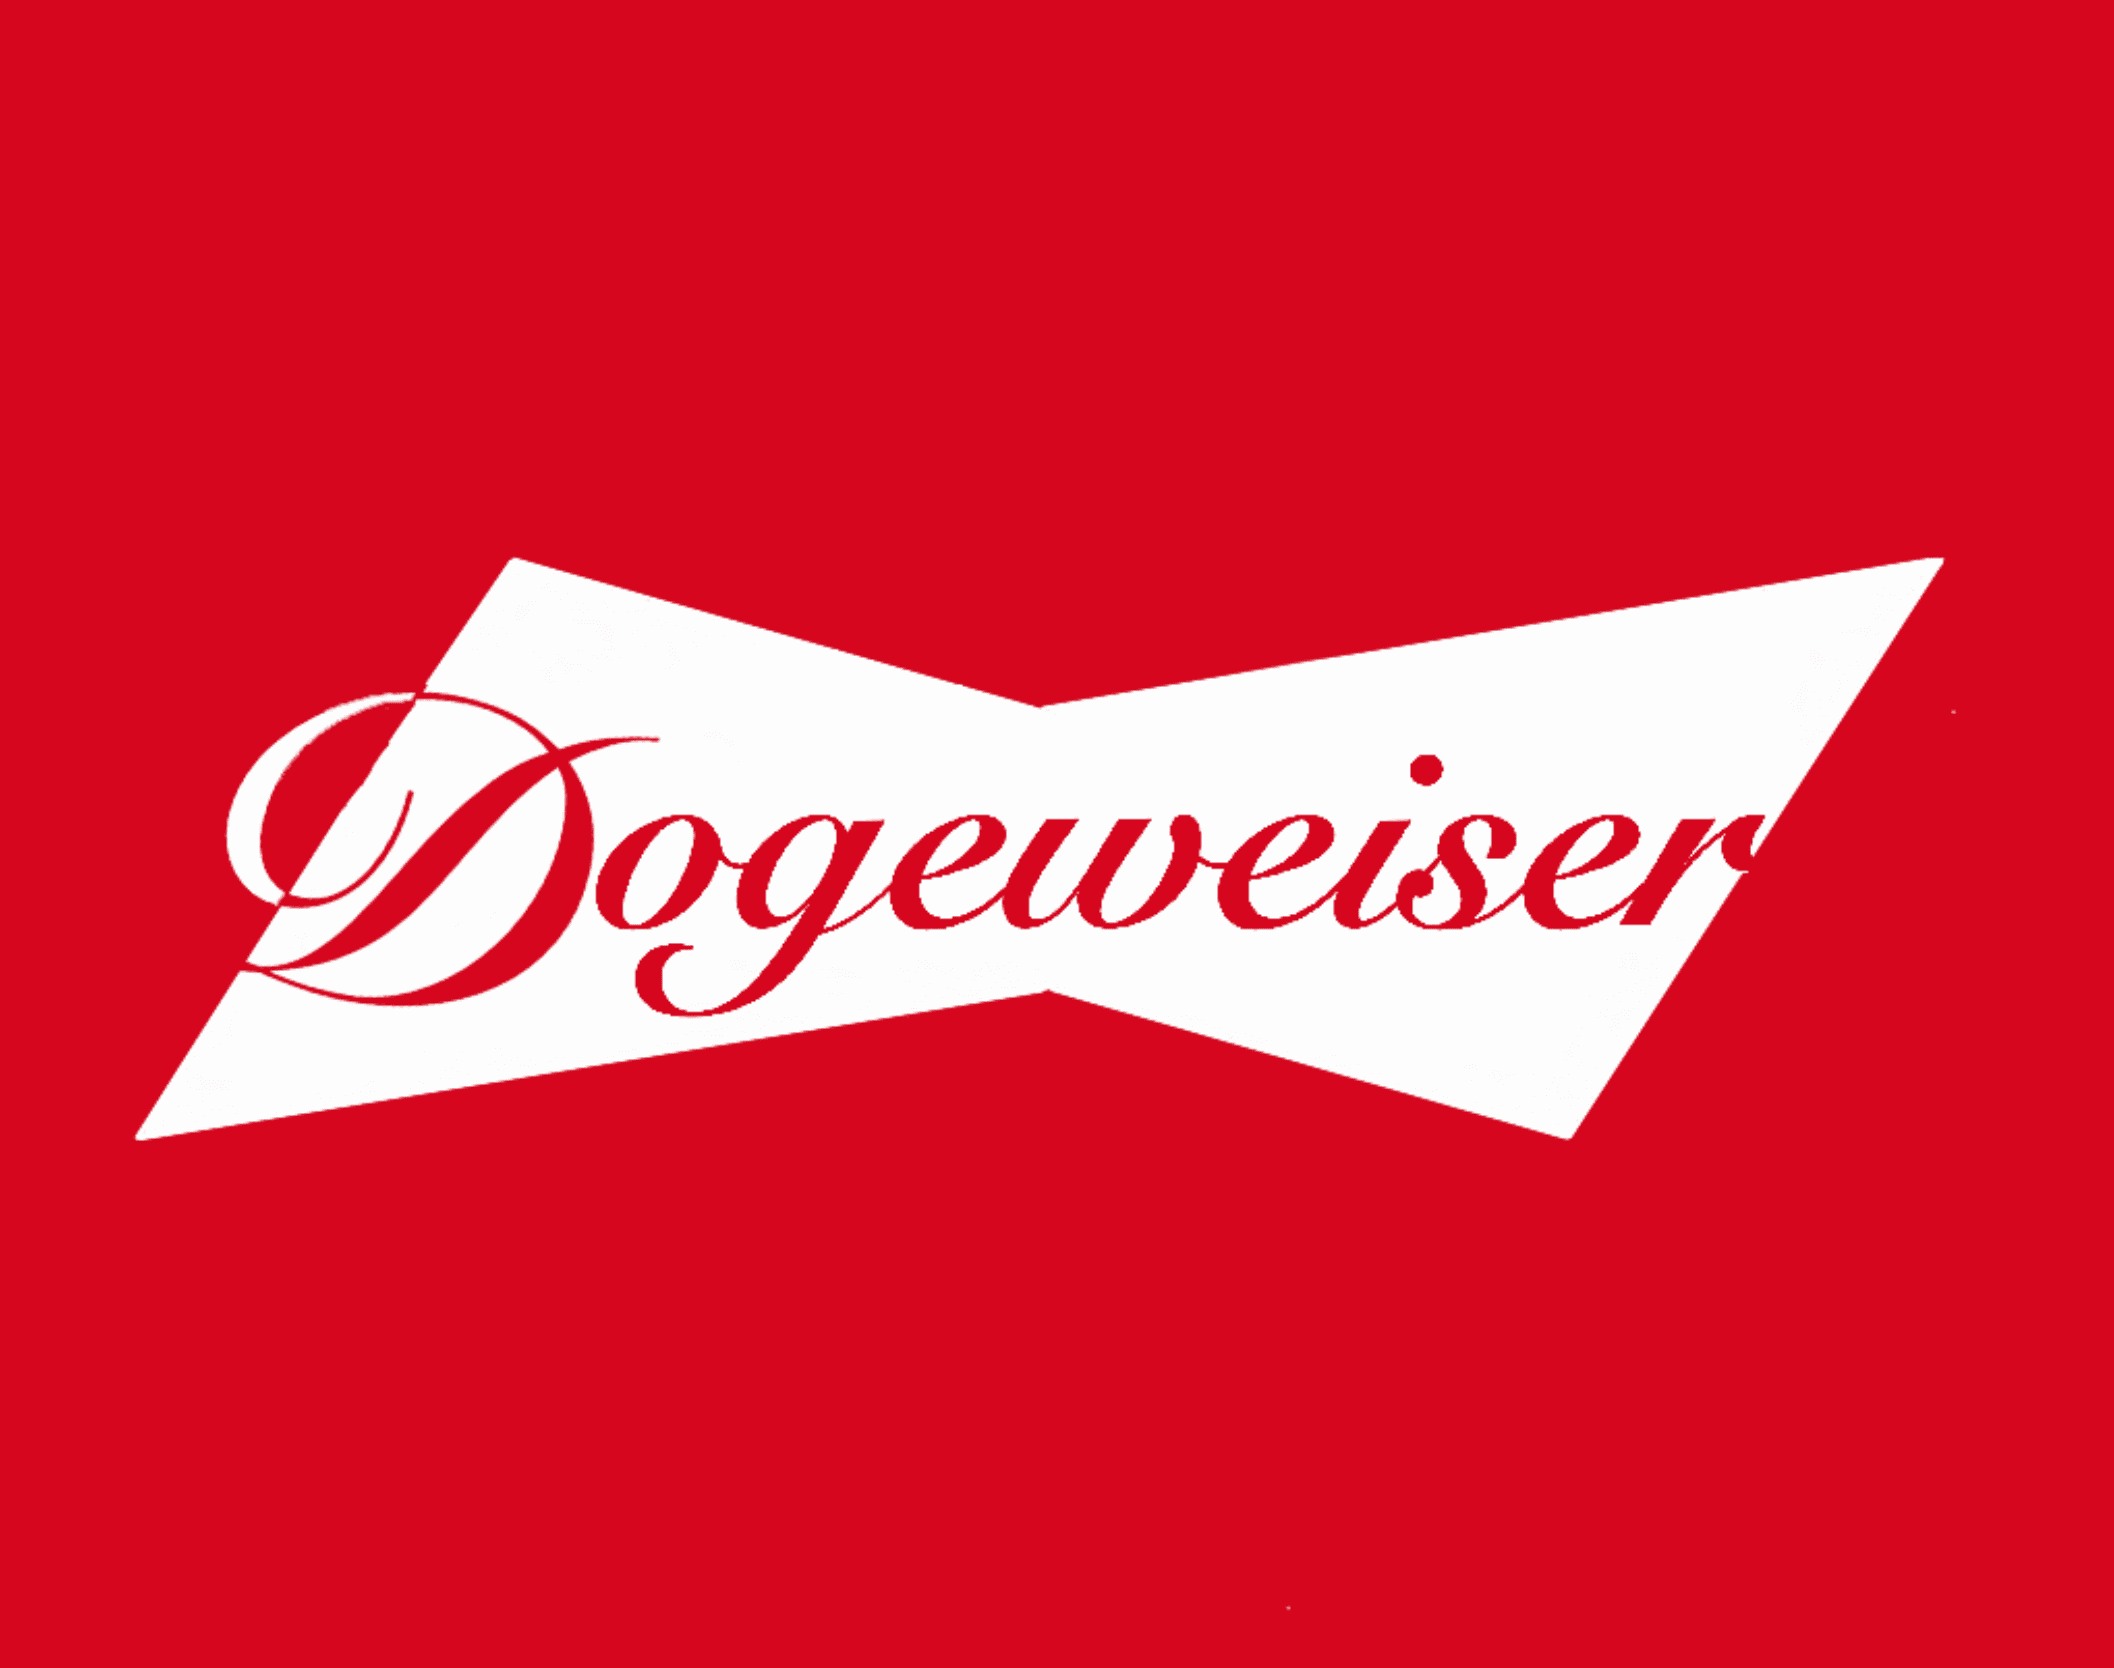 Dogeweiser banner